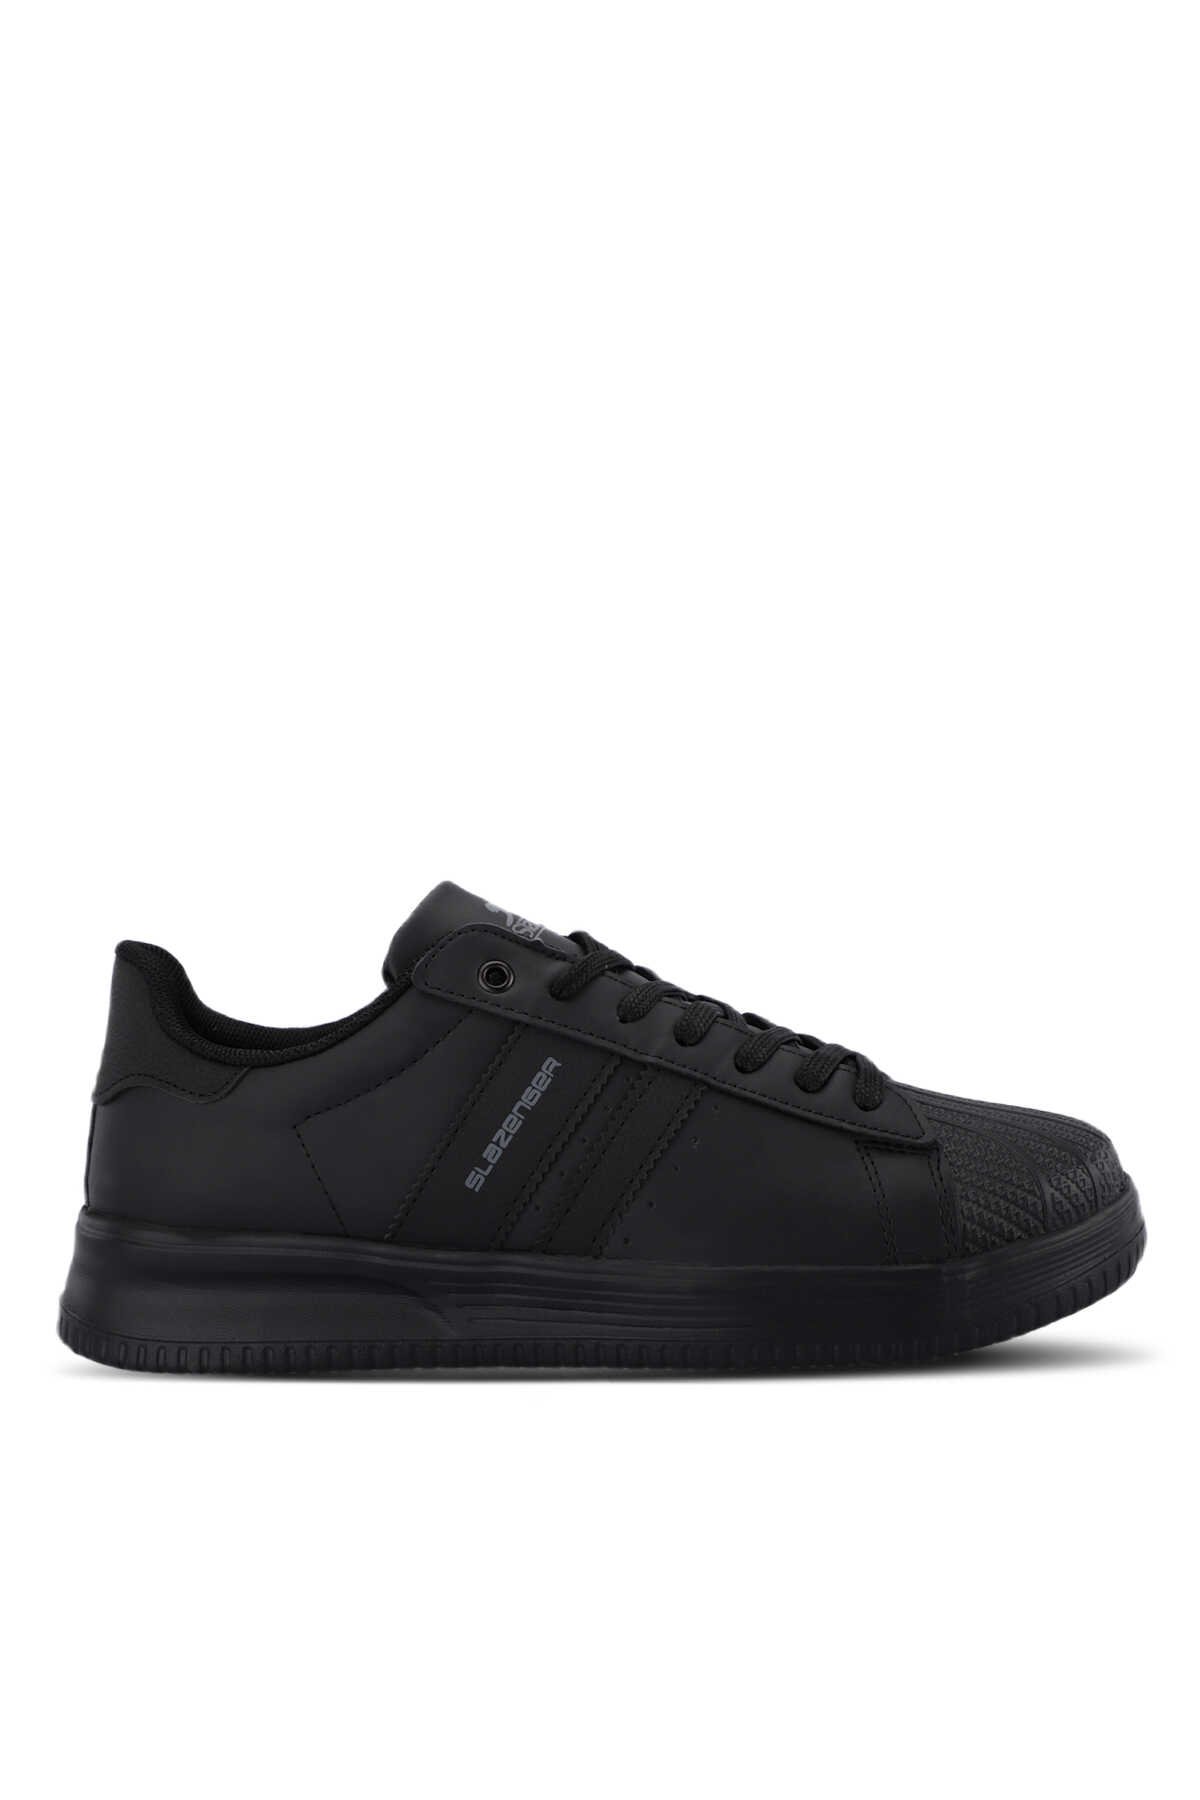 Slazenger - Slazenger ZENO Sneaker Erkek Ayakkabı Siyah / Siyah